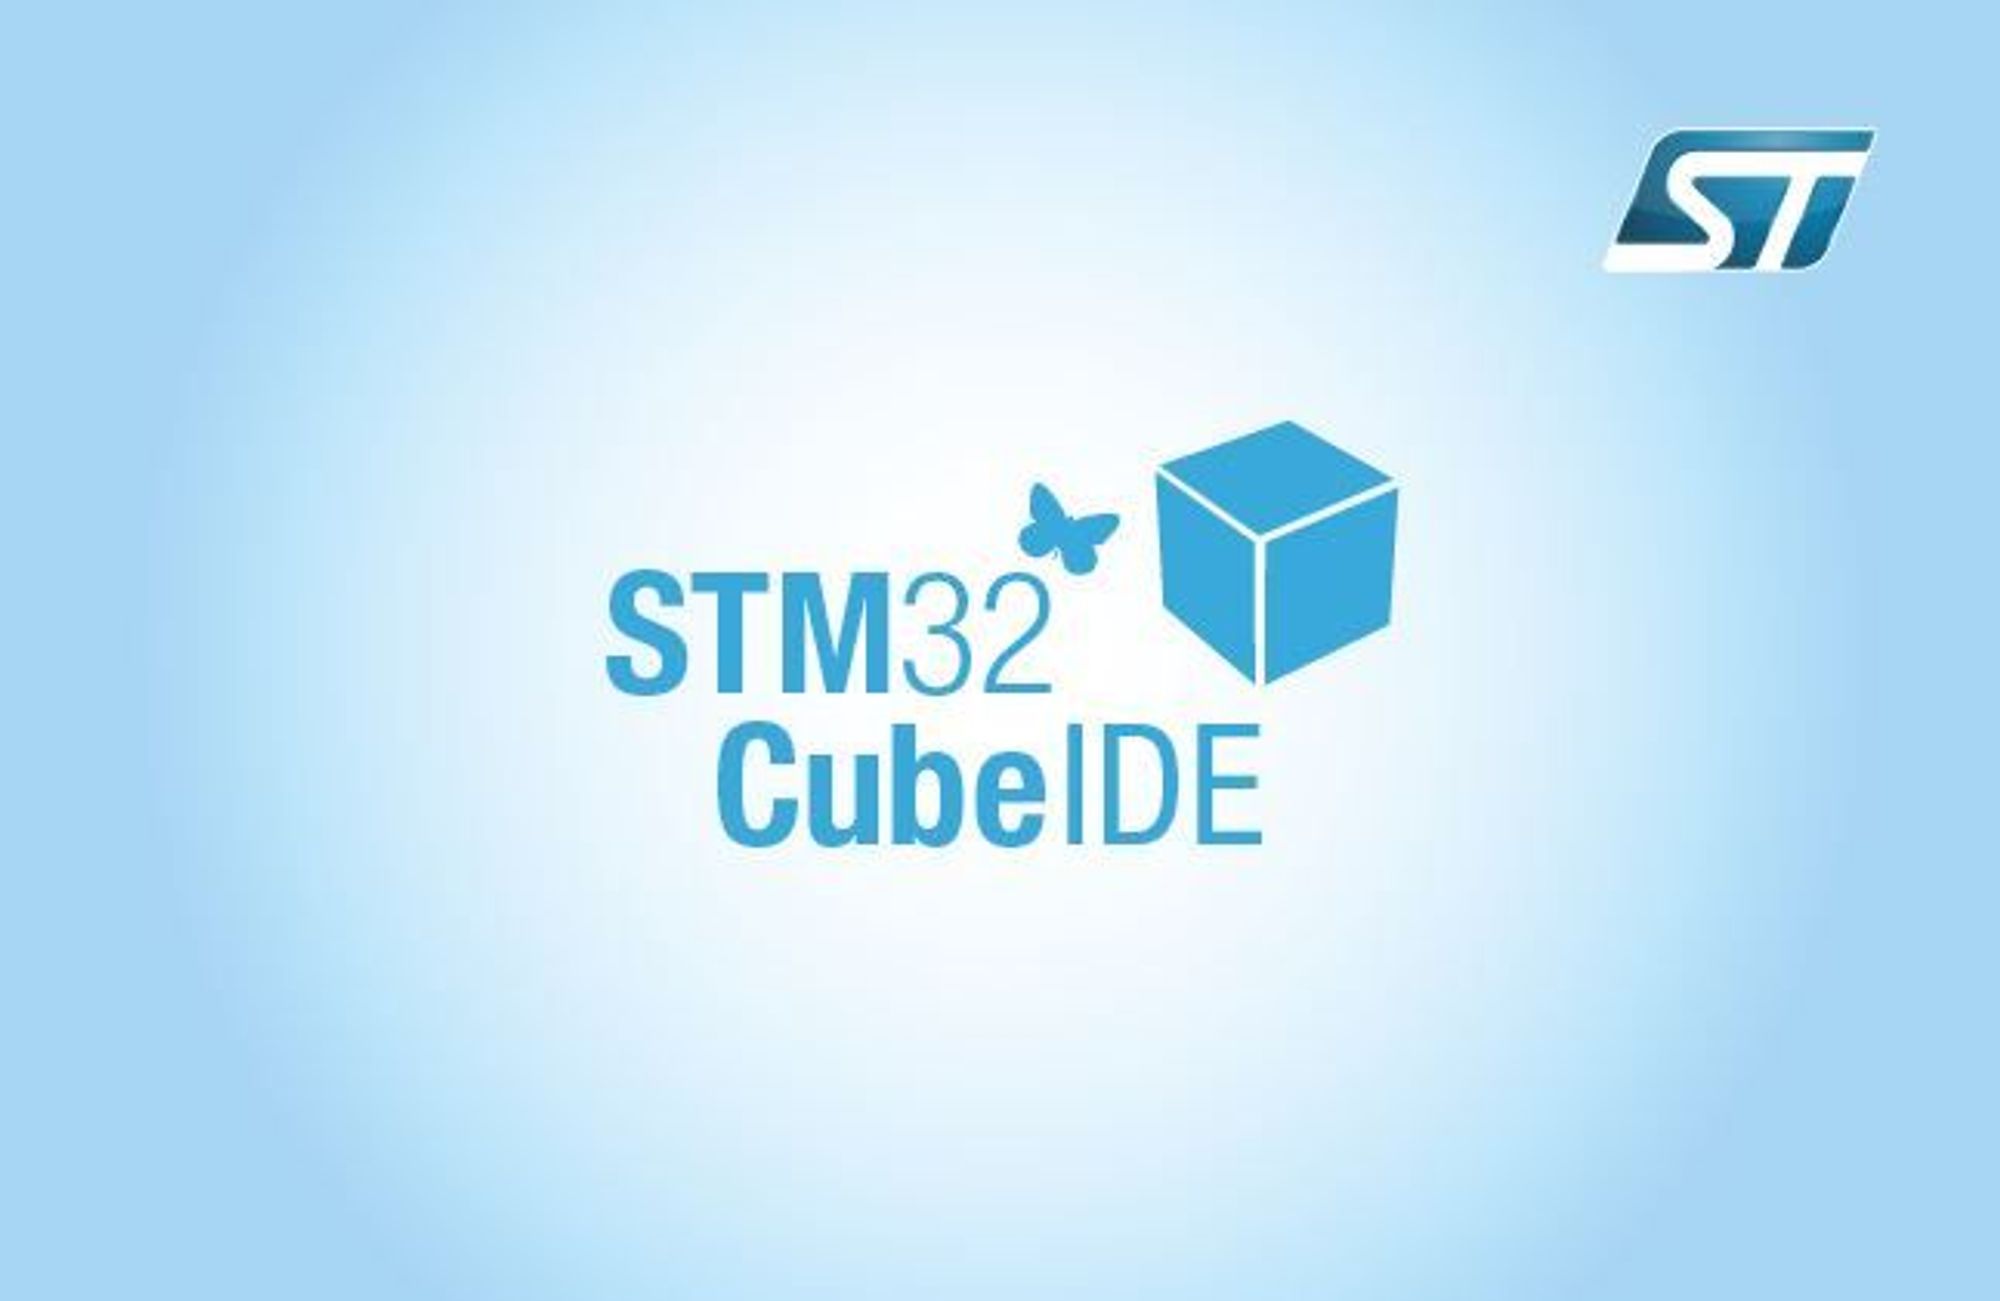 Stm32 cube mx